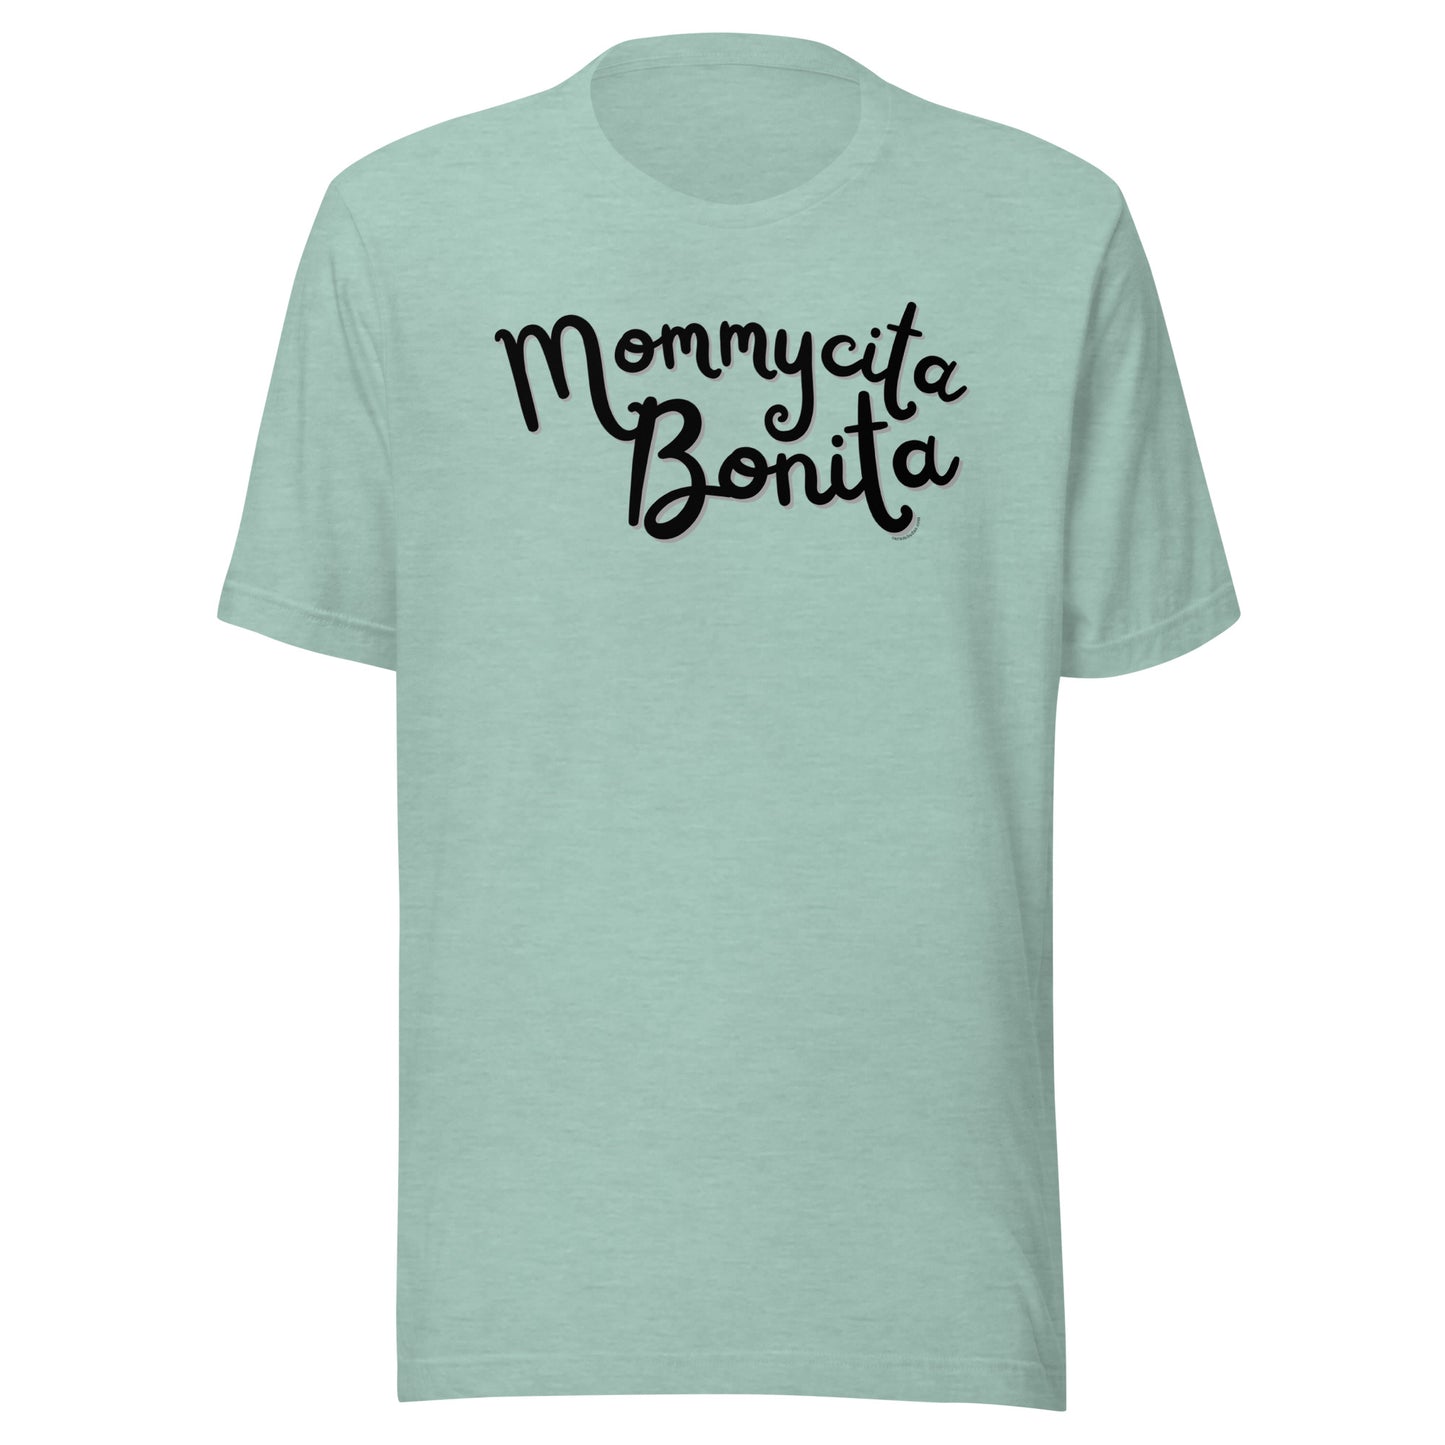 Mommycita Bonita - Unisex T-shirt